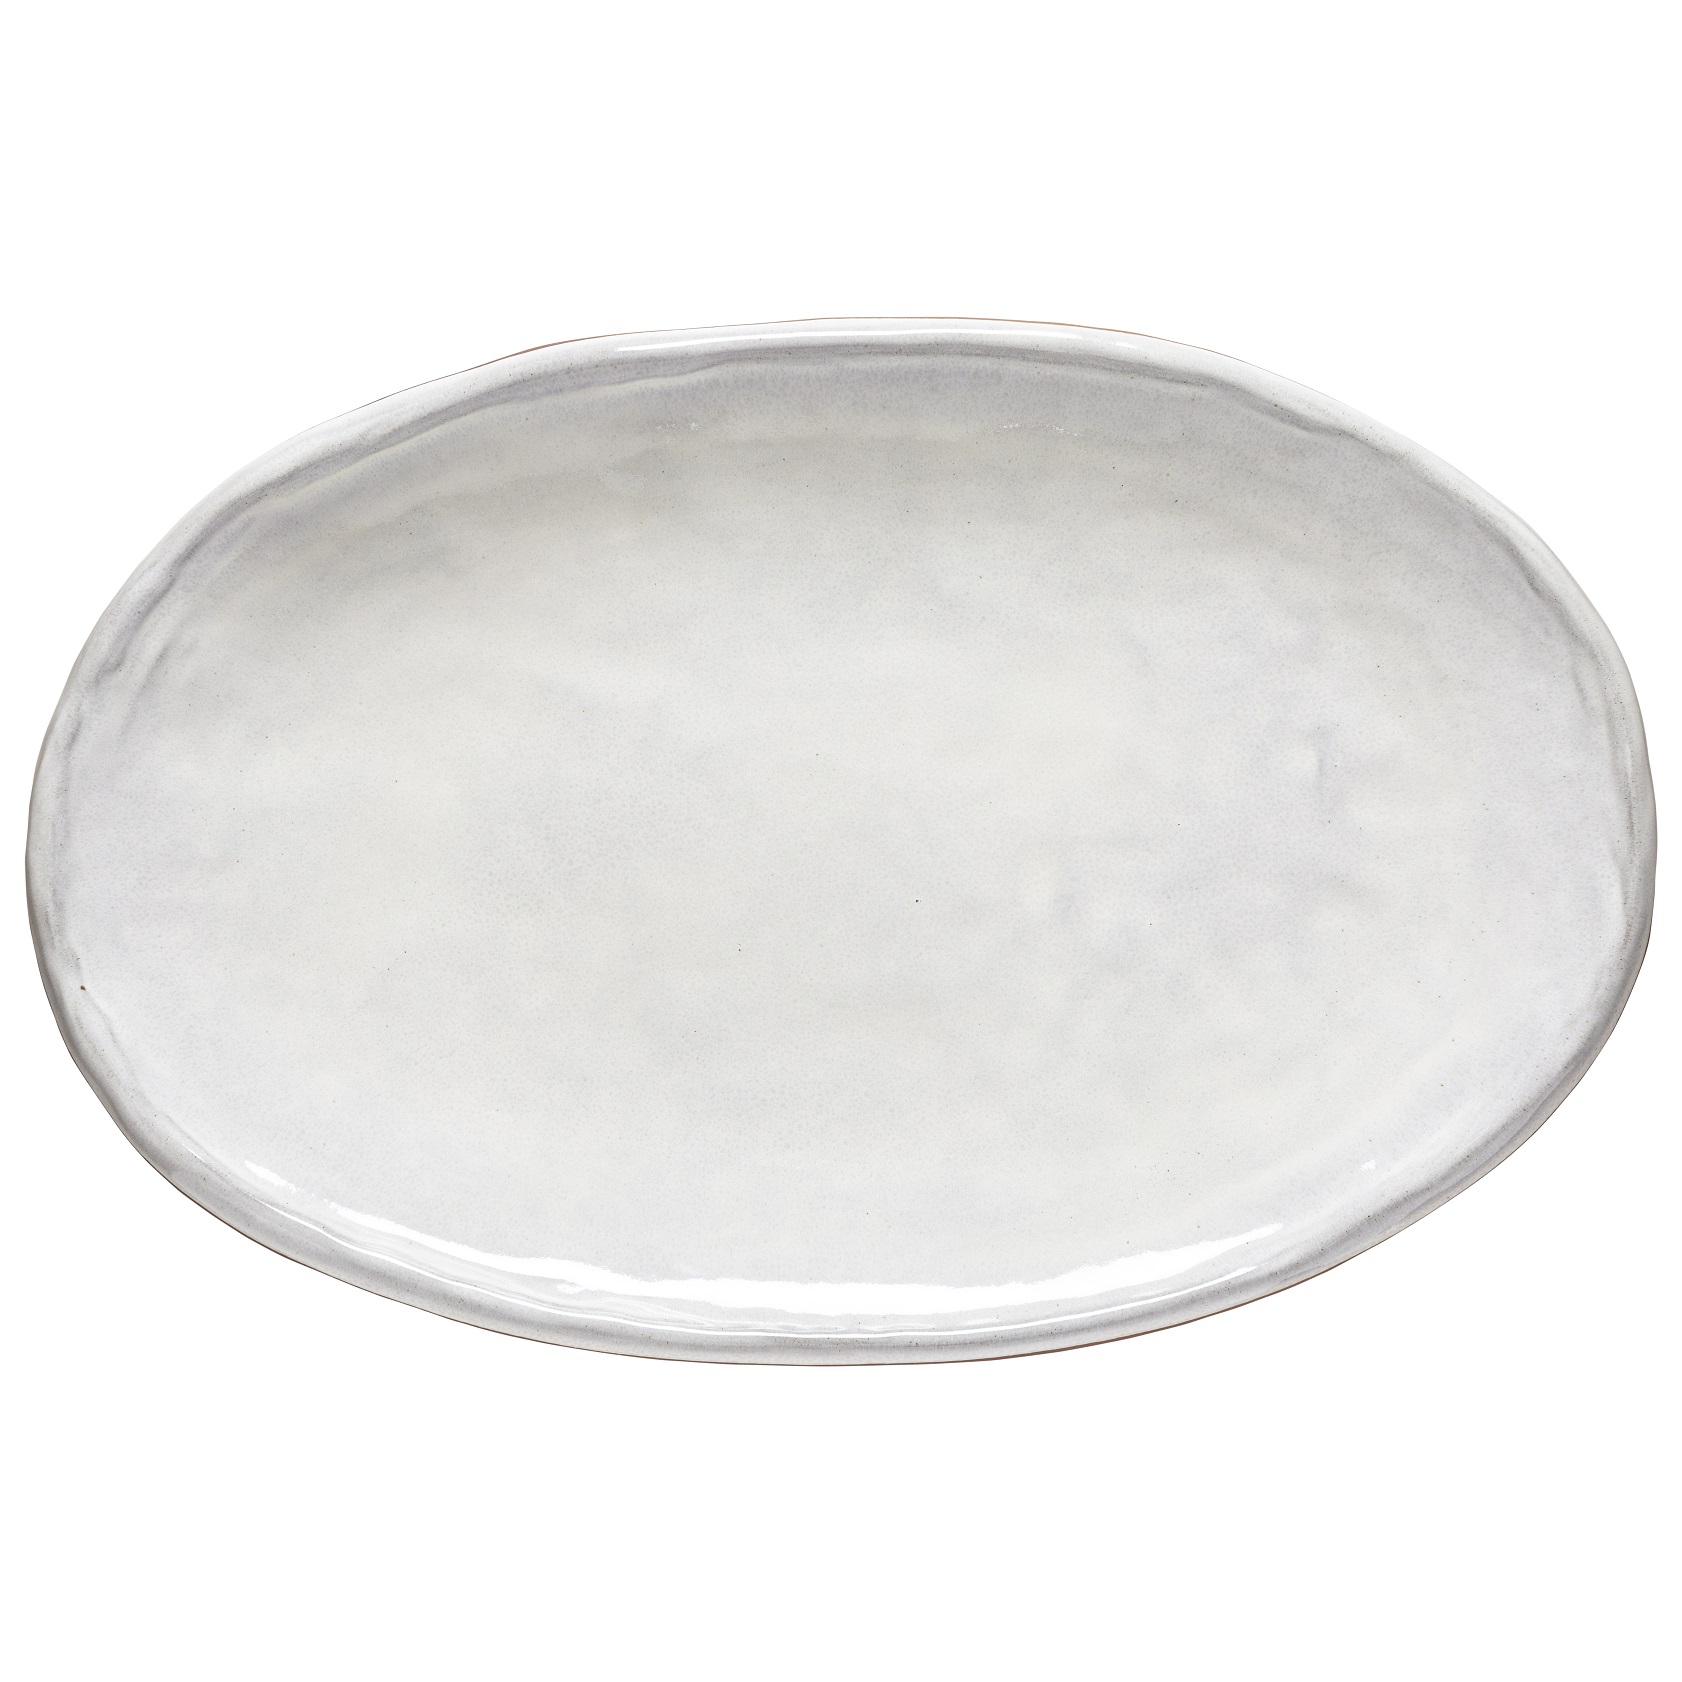 Argila Stone White Oval Platter 49cm Gift